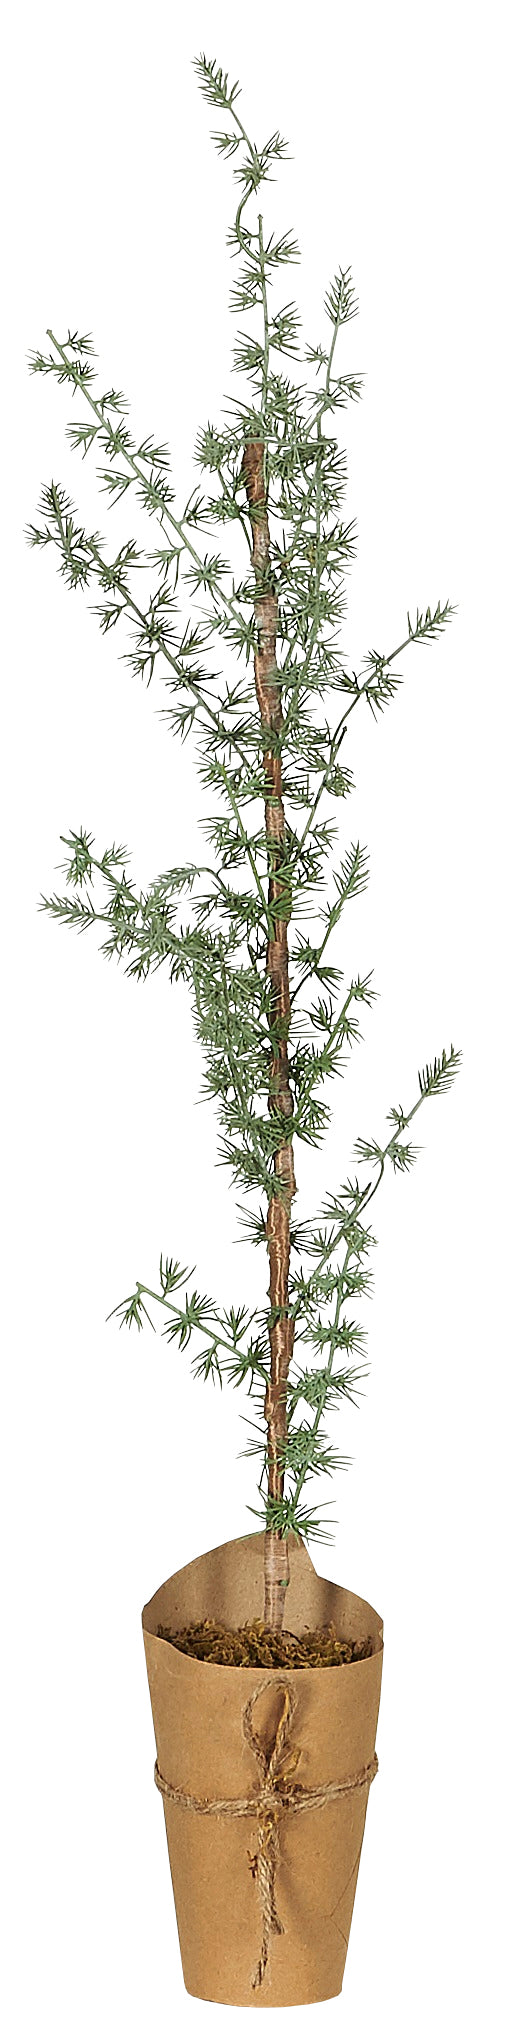 Ib Laursen - Cedertræ i Potte,  75 cm